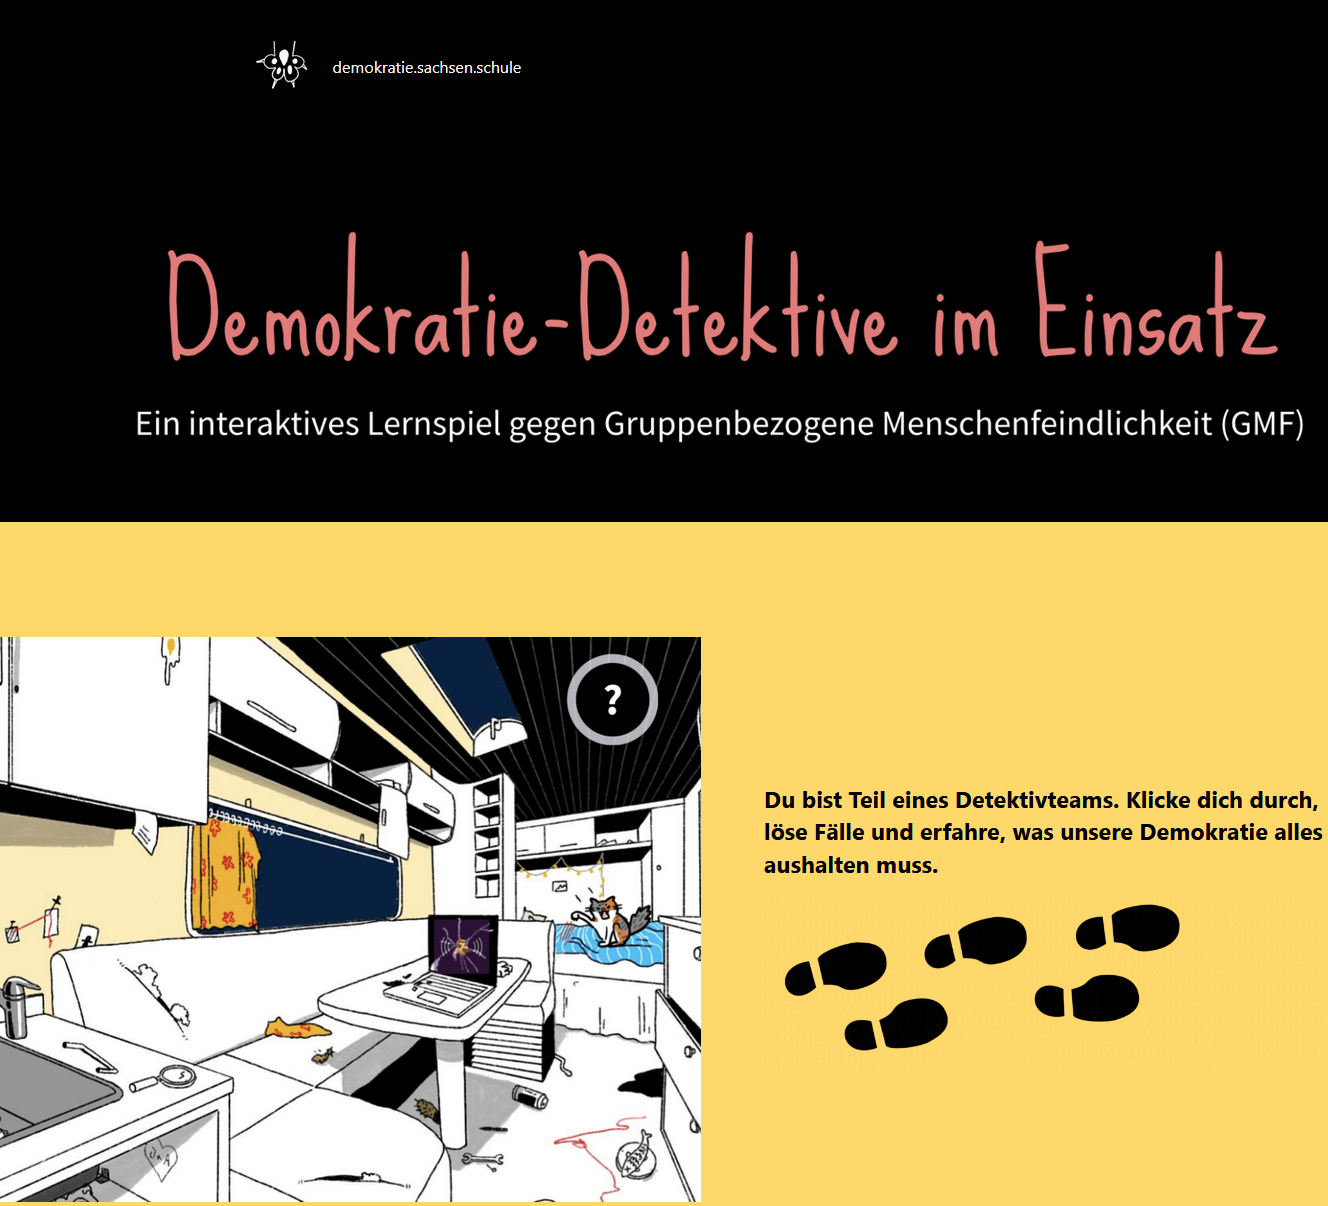 Demokratie-Detektive im Einsatz - ein interaktives Lernspiel gegen Gruppenbezogene Menschenfeindlichkeit (GMF)